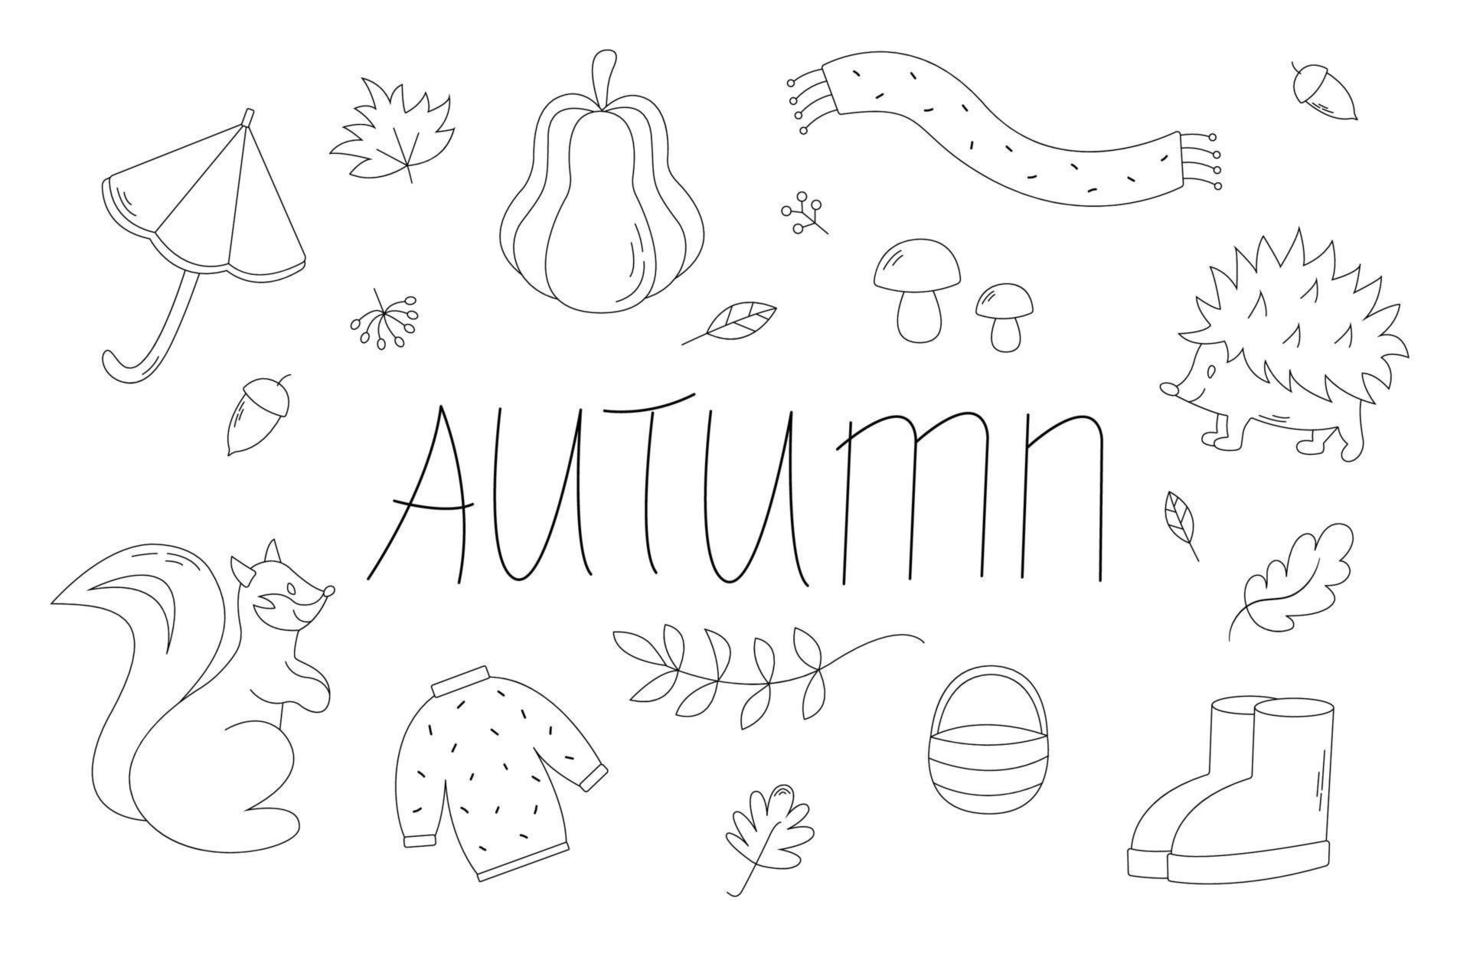 Herbst-Schwarz-Weiß-Sticker-Kollektion mit niedlichen saisonalen Elementen. Scrapbook-Sammlung von Elementen der Herbstsaison vektor